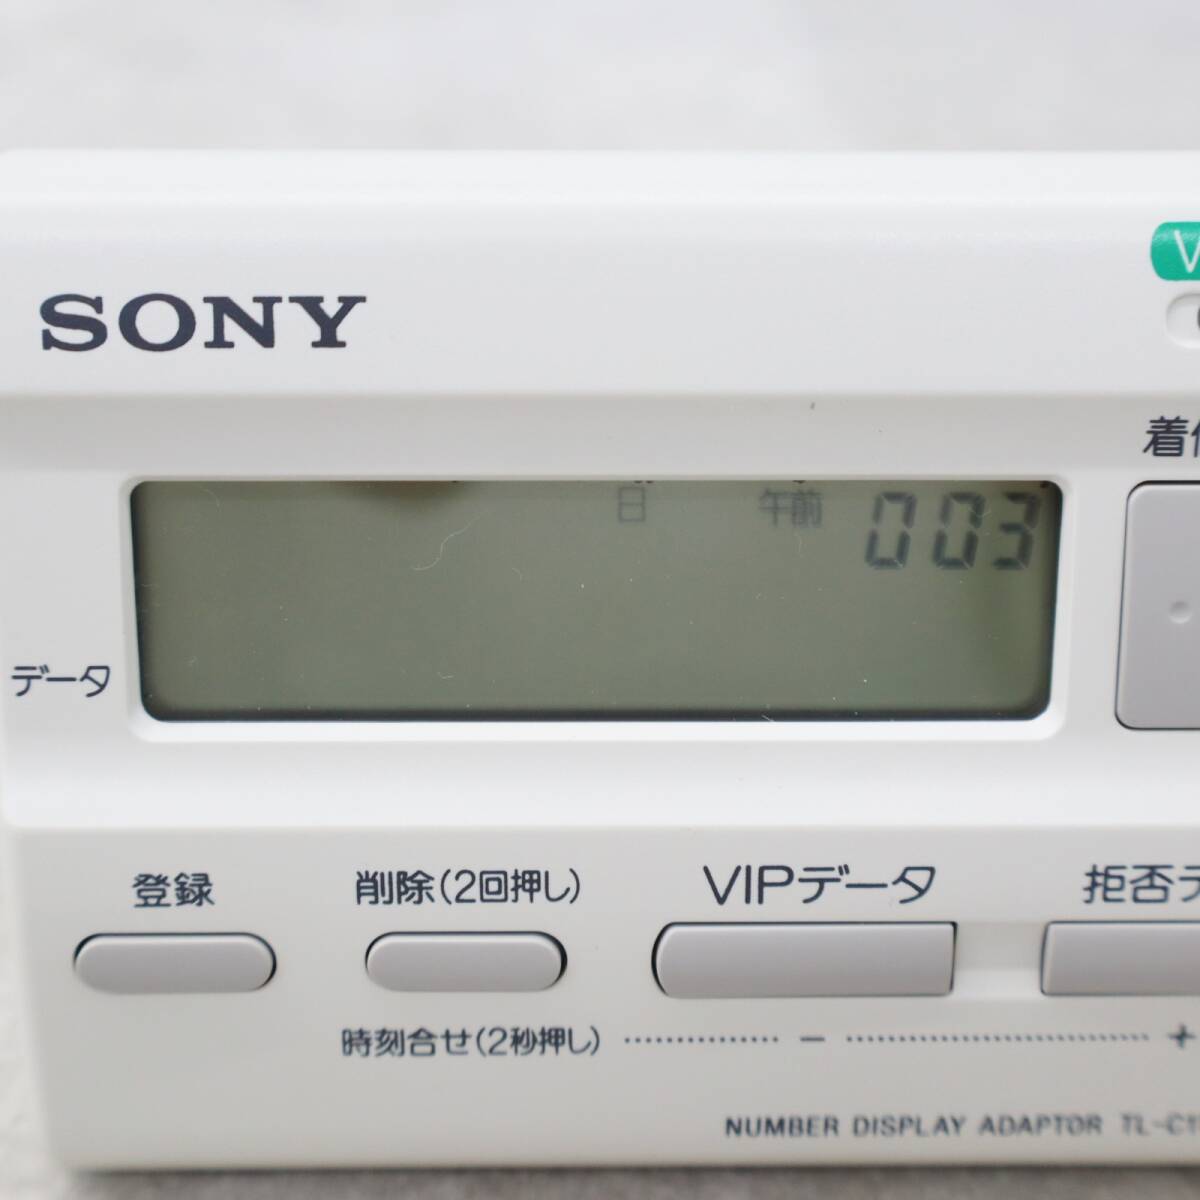 ∨ не использовался товар l номер дисплей адаптор lSONY Sony TL-C11 l #P2983